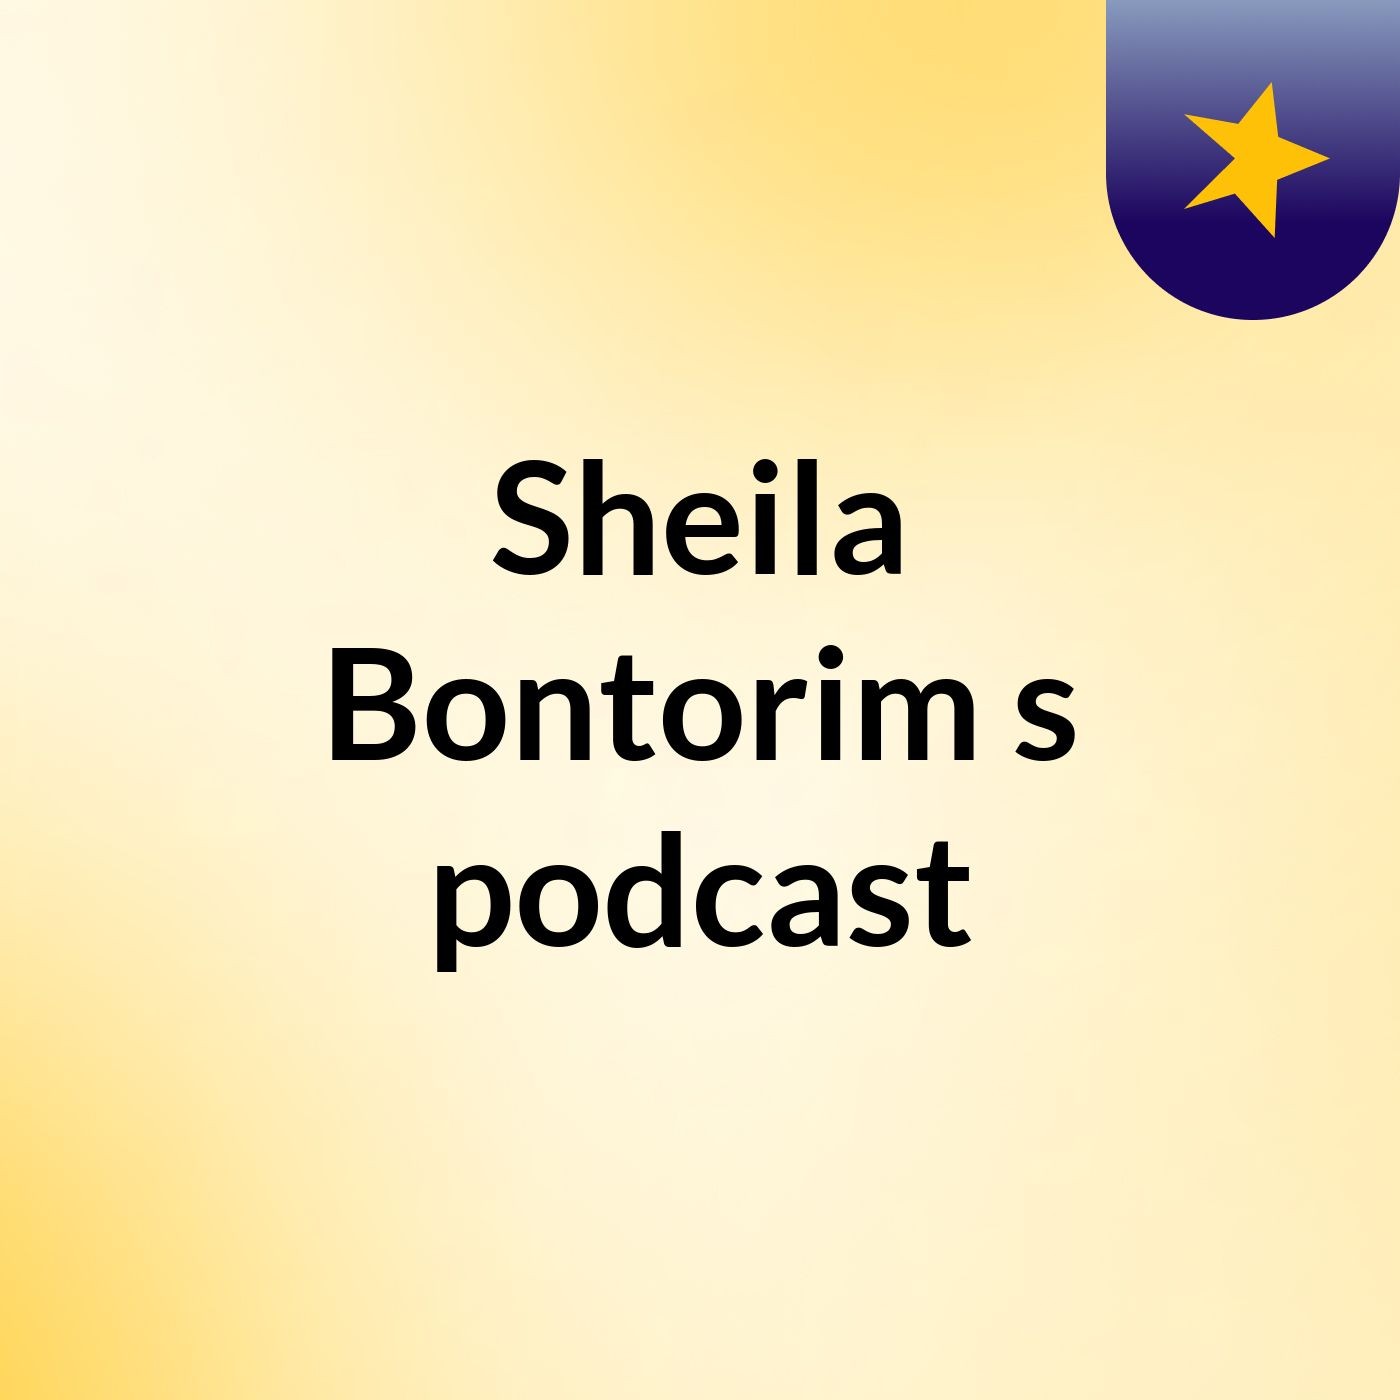 Sheila Bontorim's podcast